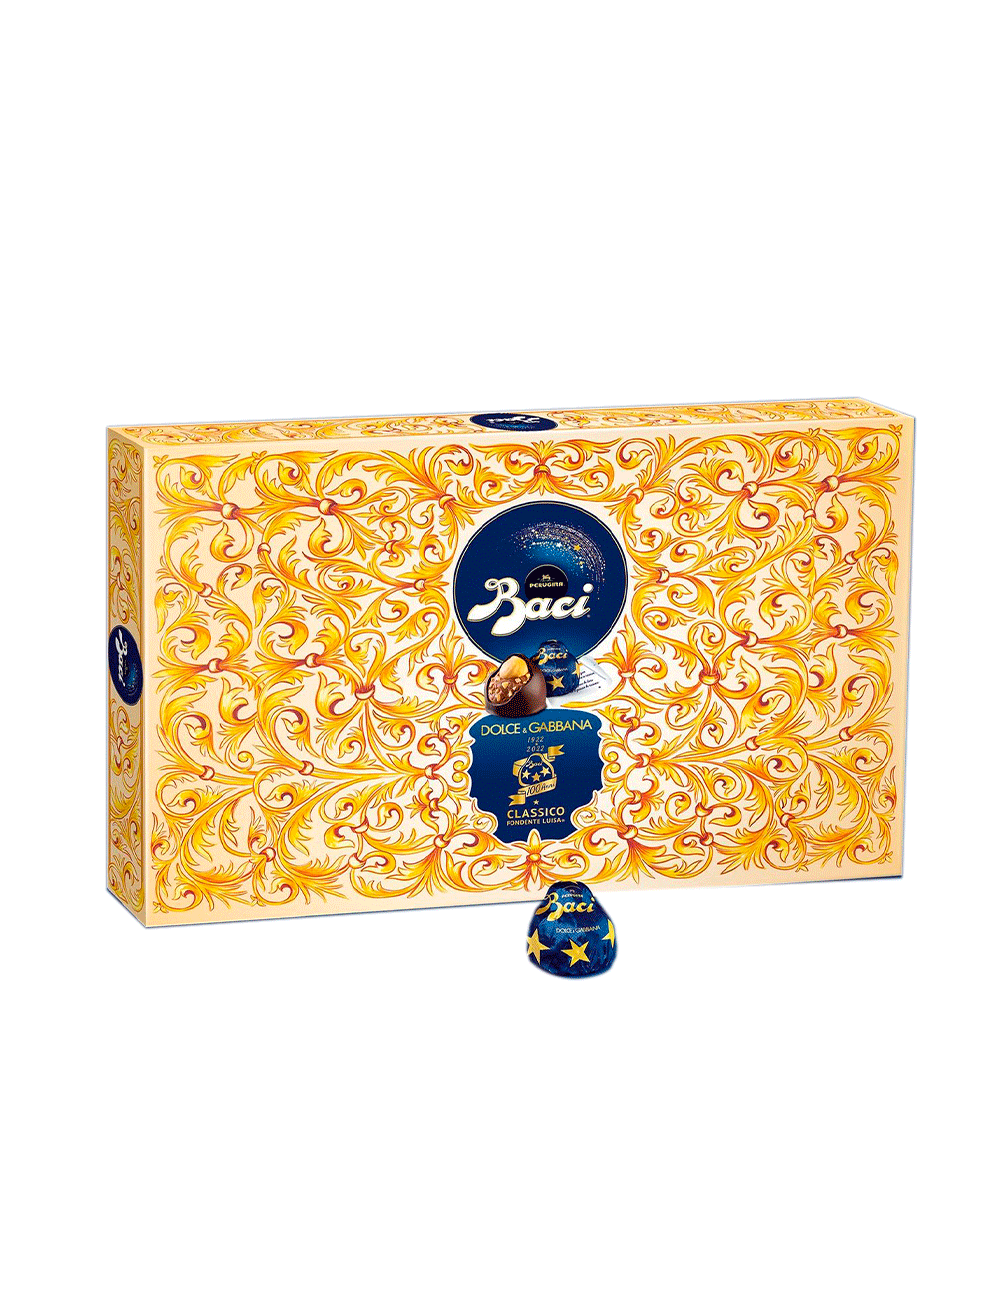 Baci Perugina Dolce & Gabbana baroque box 350 g